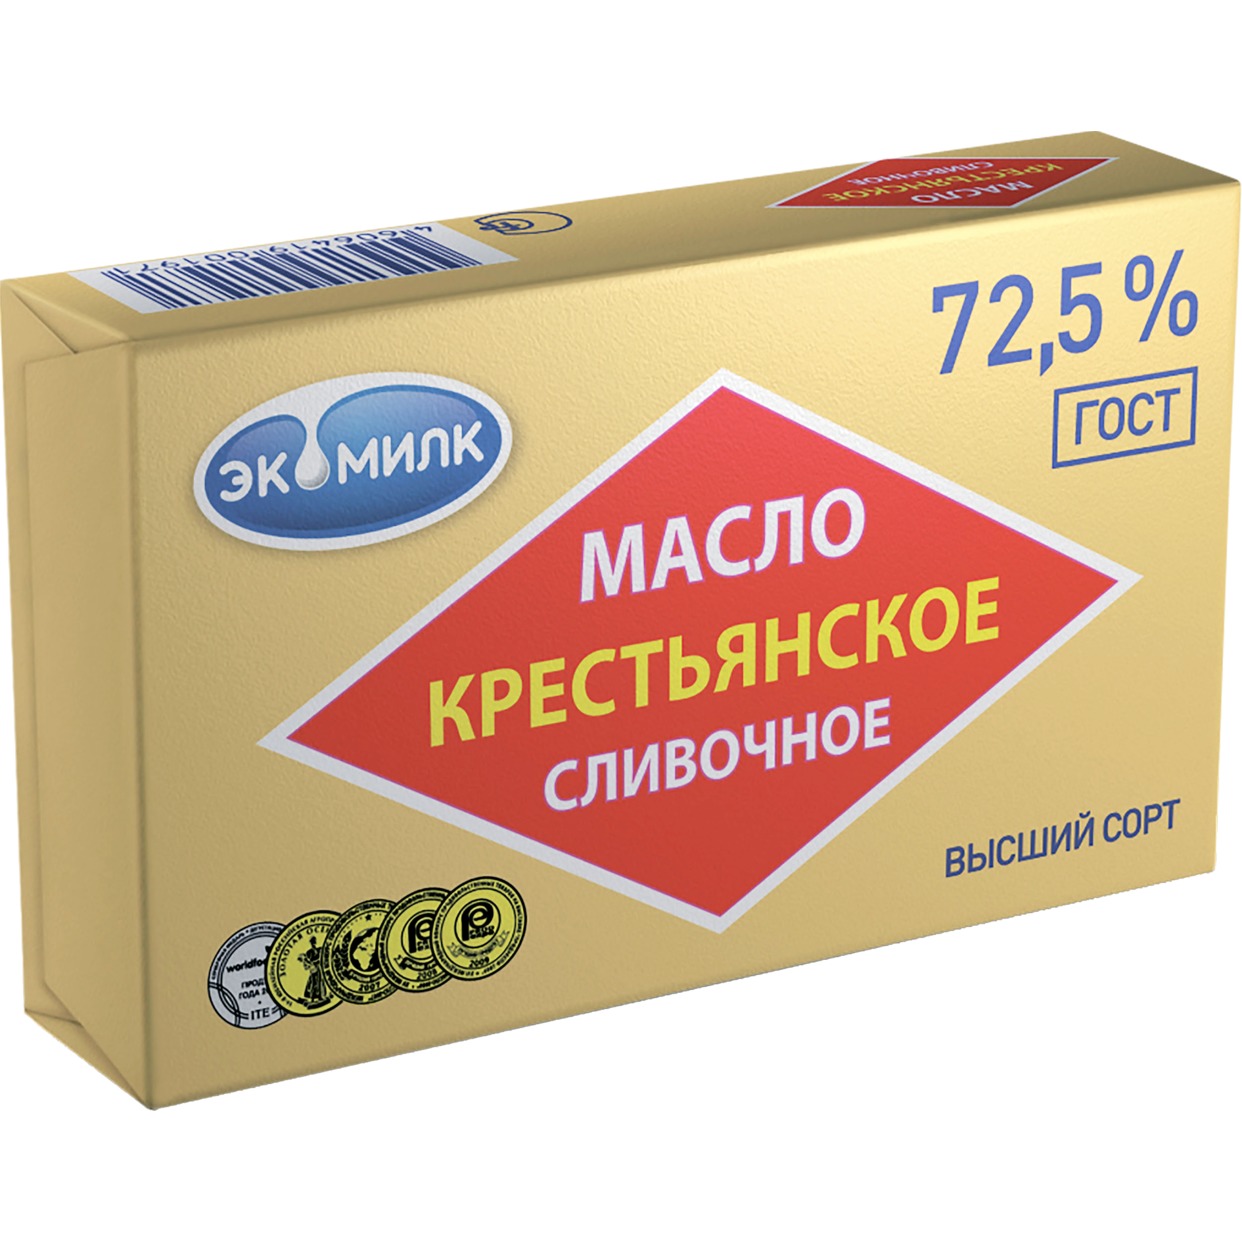 Масло "Экомилк" сливочное Крестьянское 72.5% 180г по акции в Пятерочке